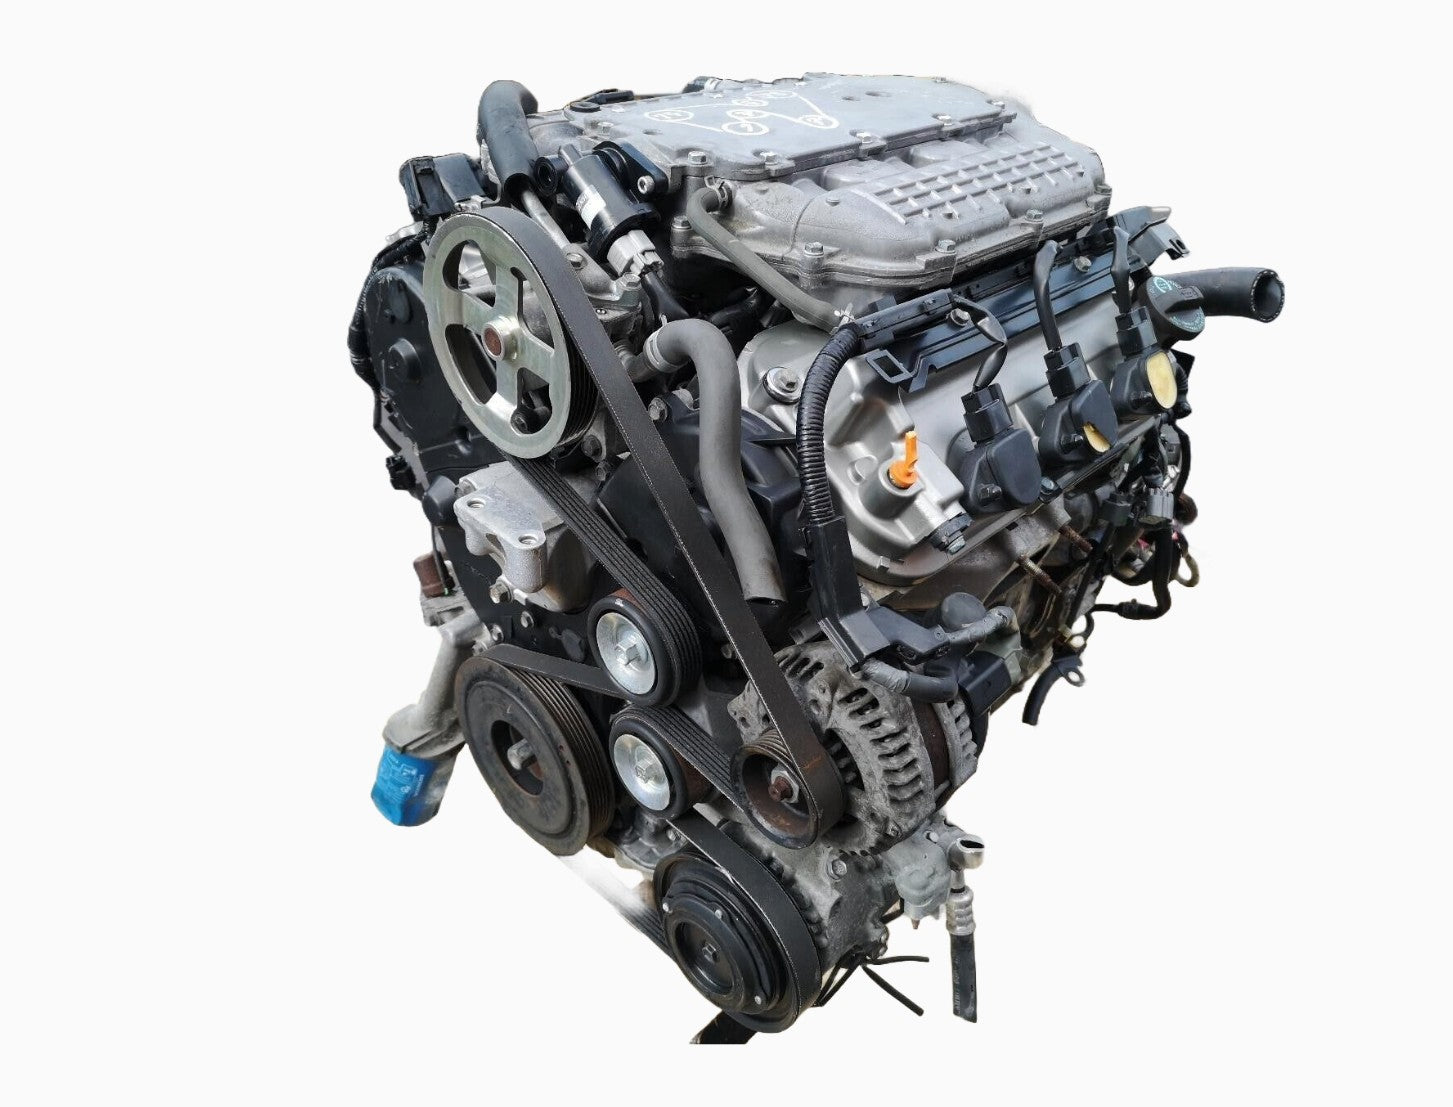 Honda Ridgeline 3.5L V6 Engines 2006 to 2008